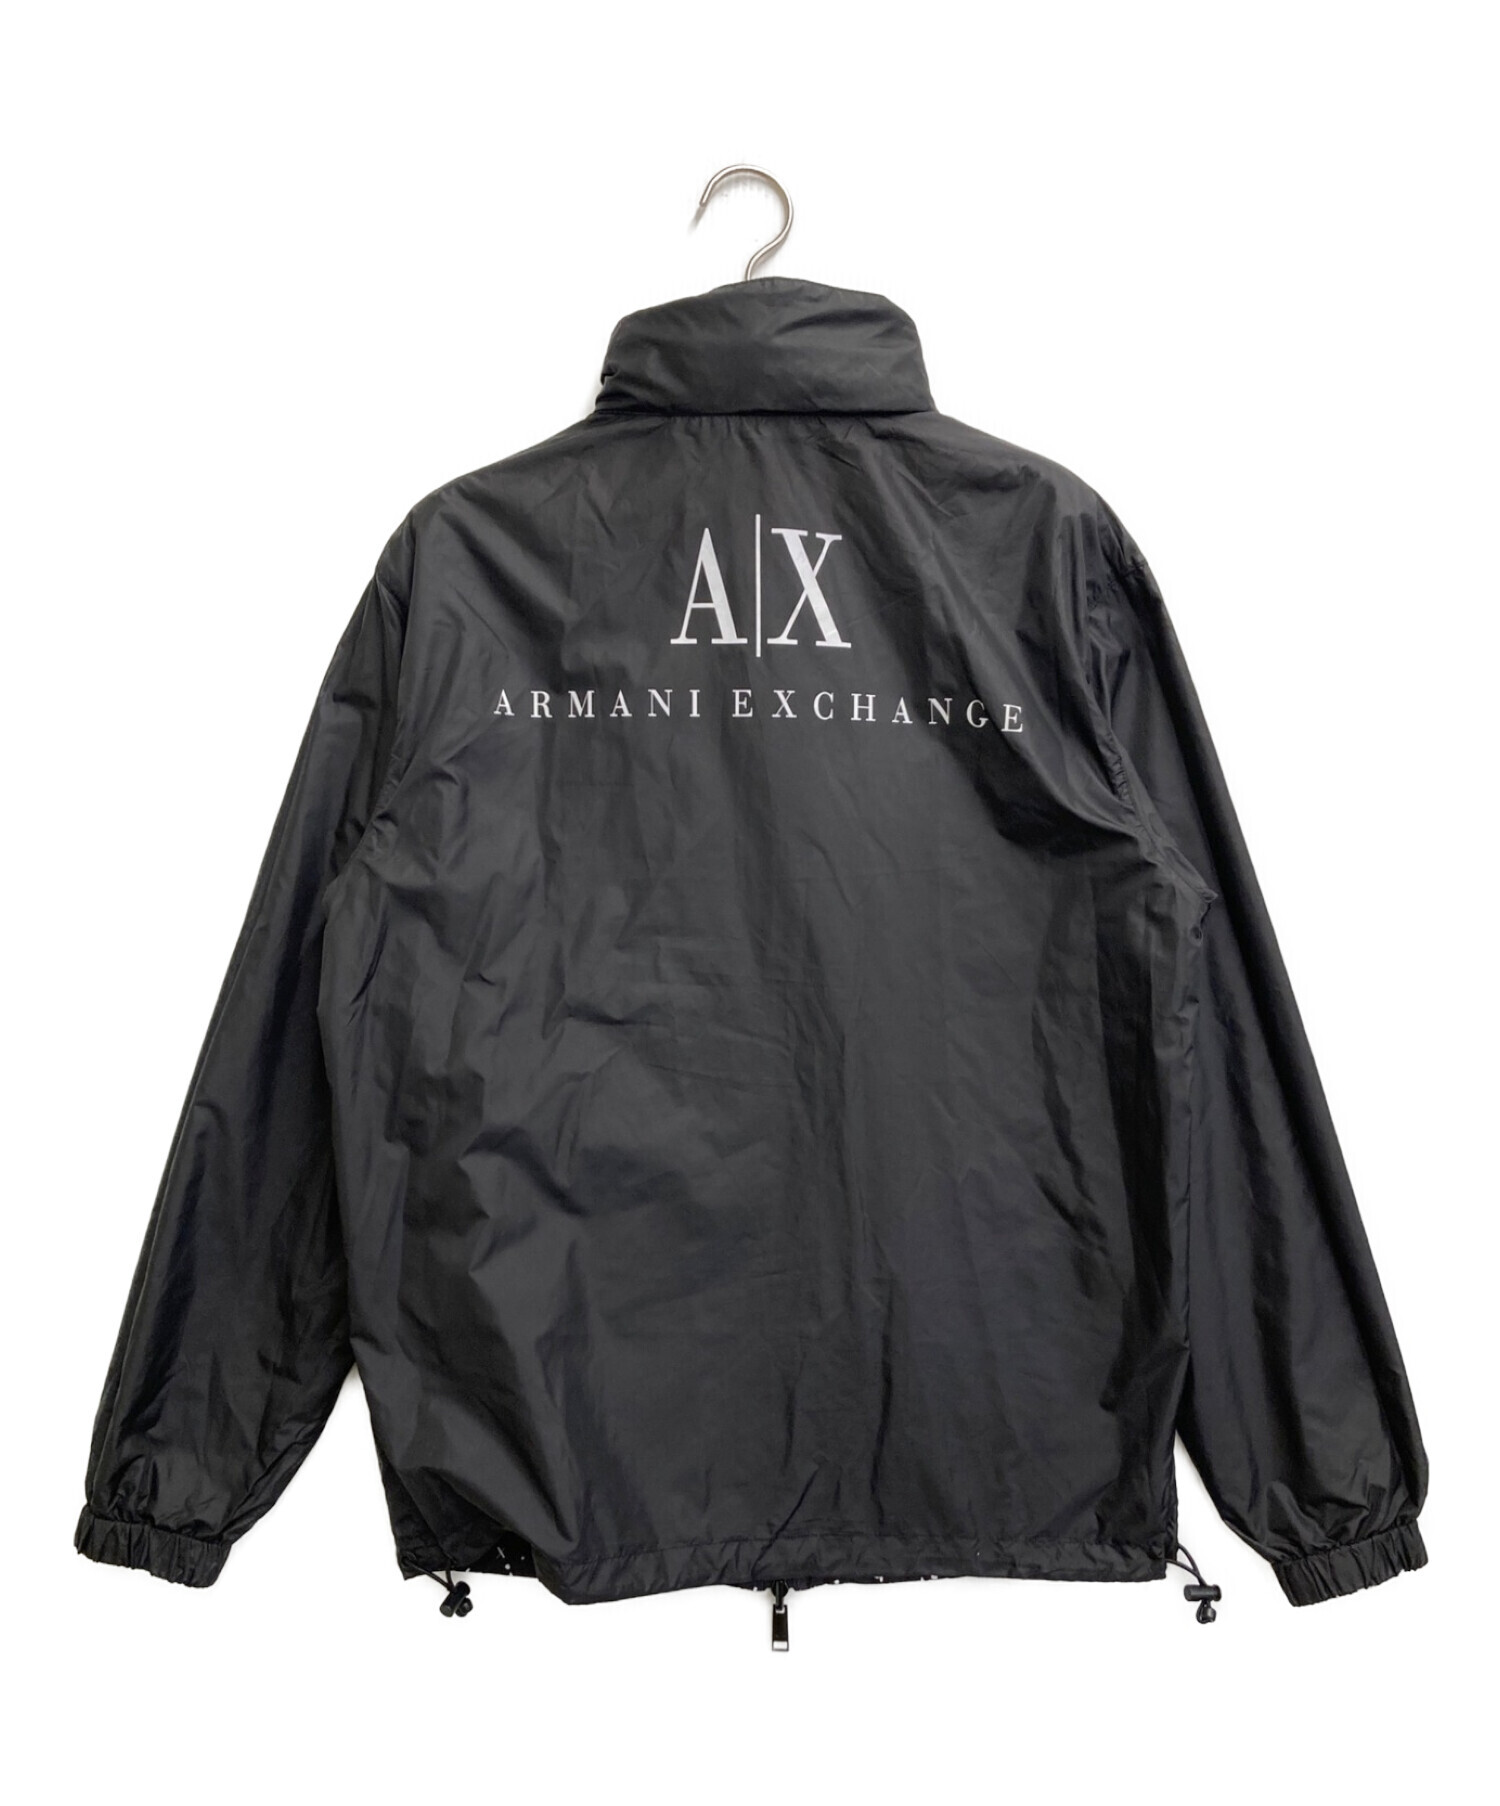 ARMANI EXCHANGE (アルマーニ エクスチェンジ) リバーシブルジャケット ブラック サイズ:XS